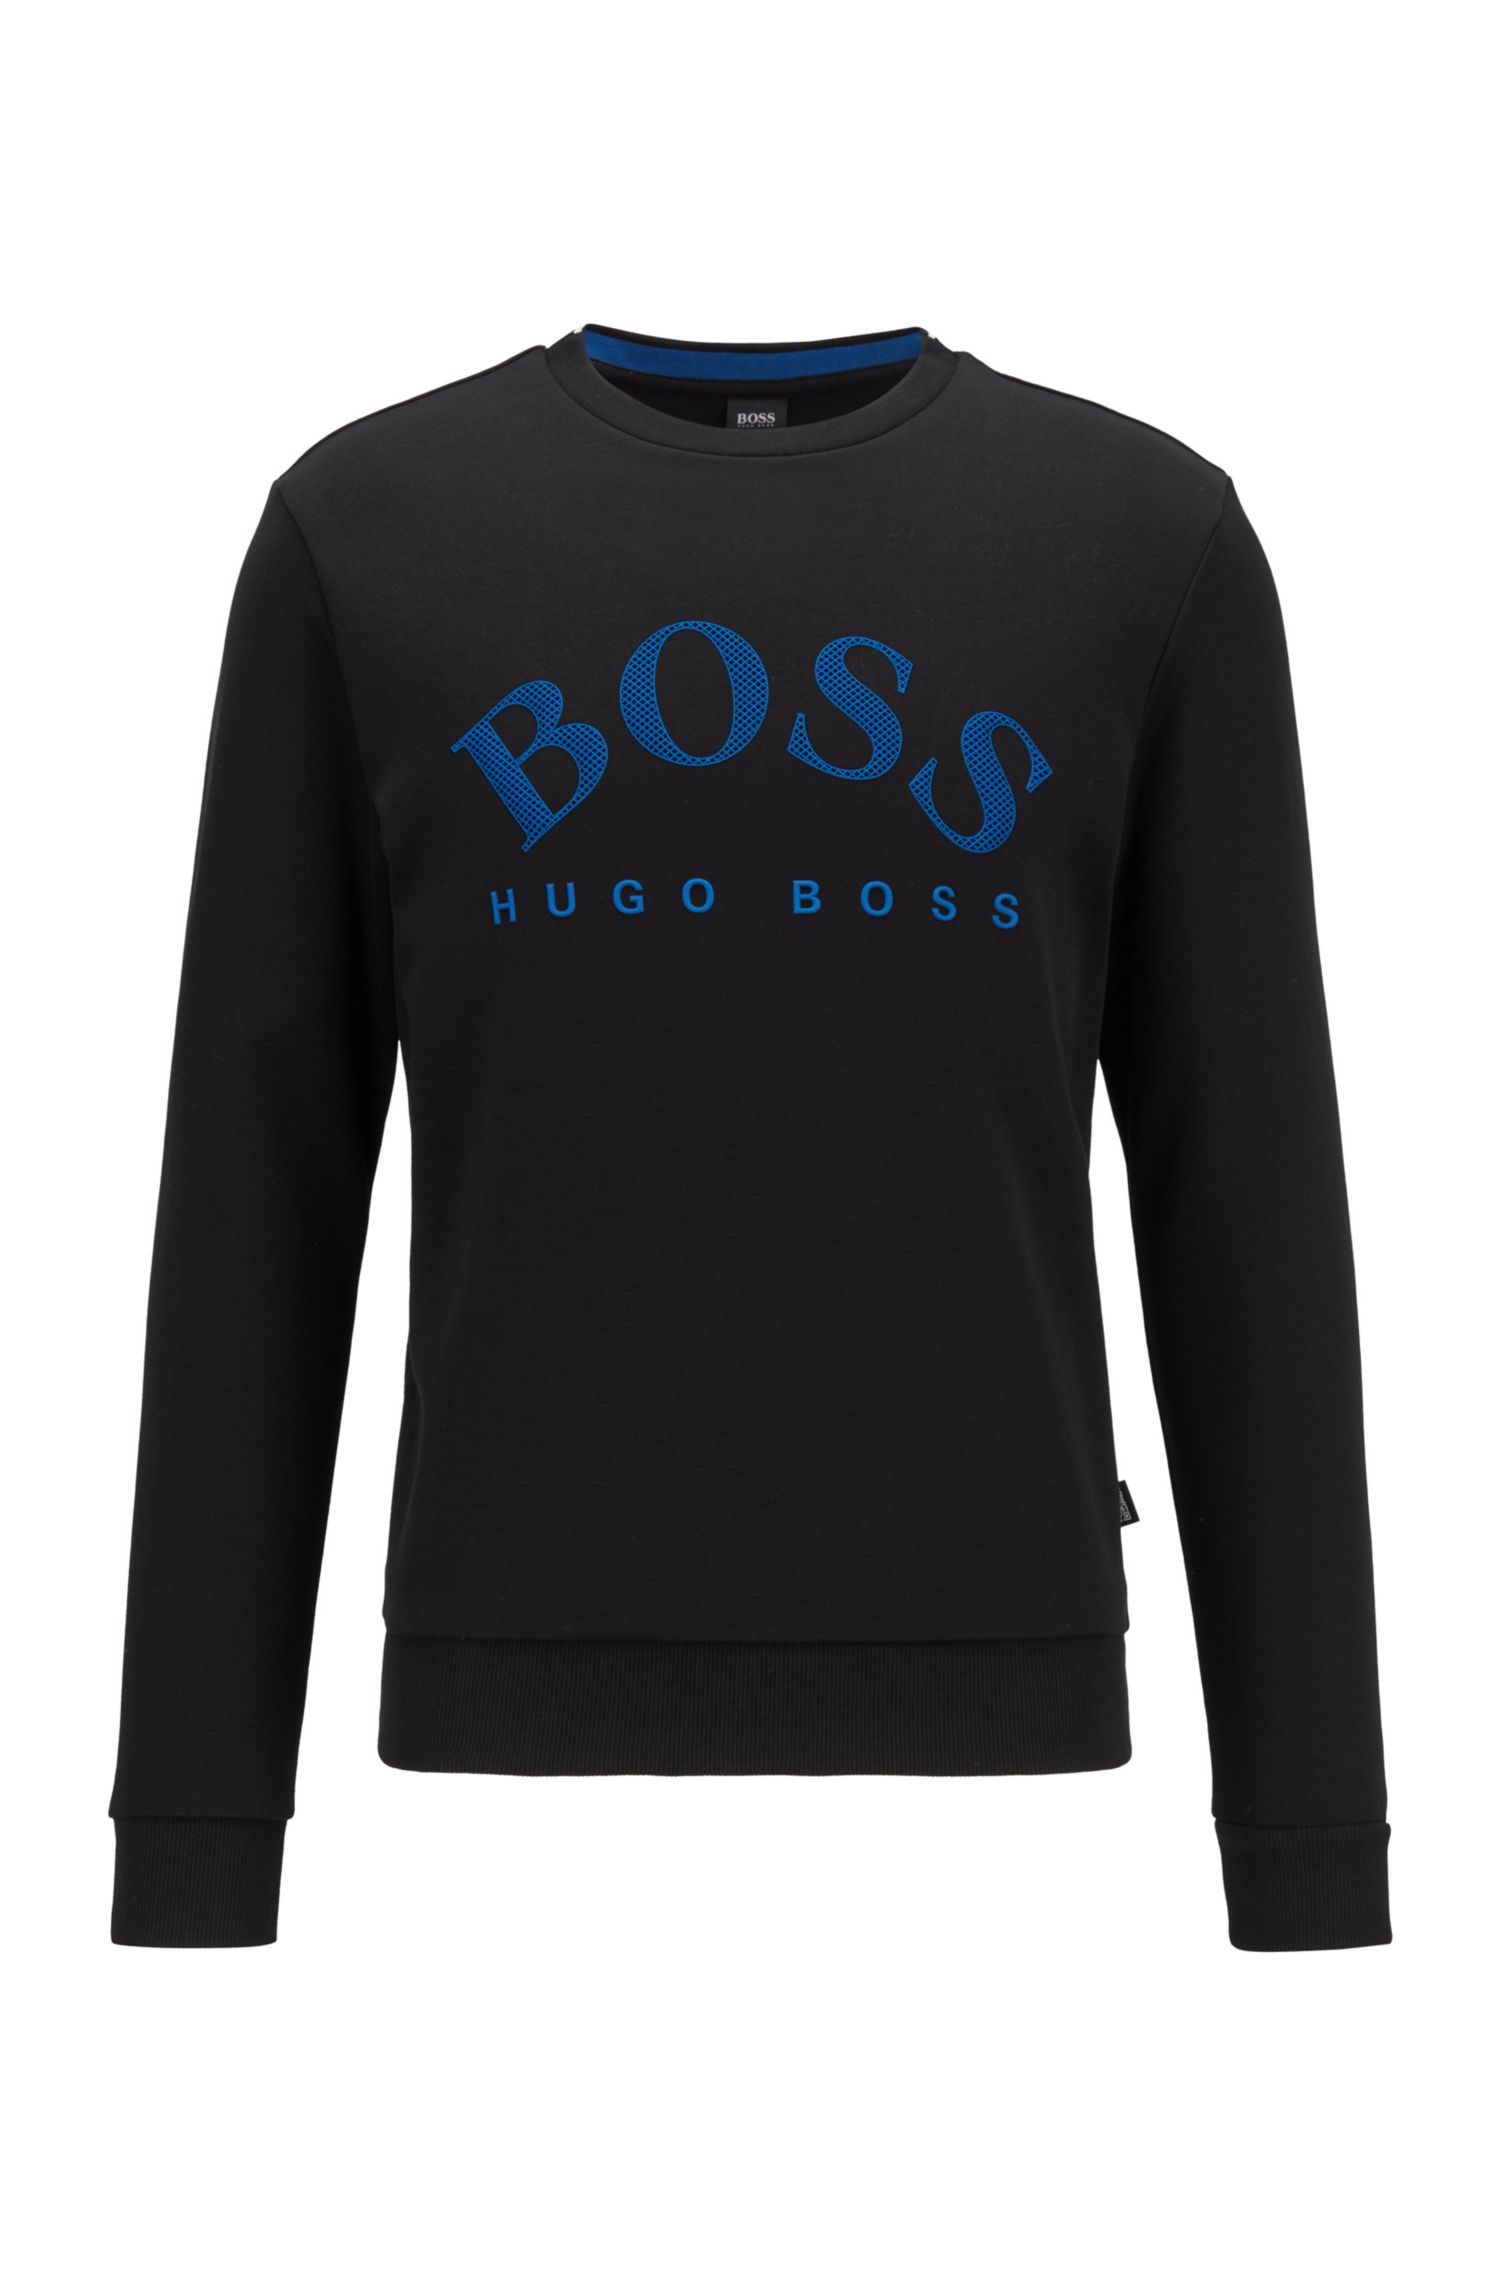 Hugo Boss Crew-neck sweatshirt with 